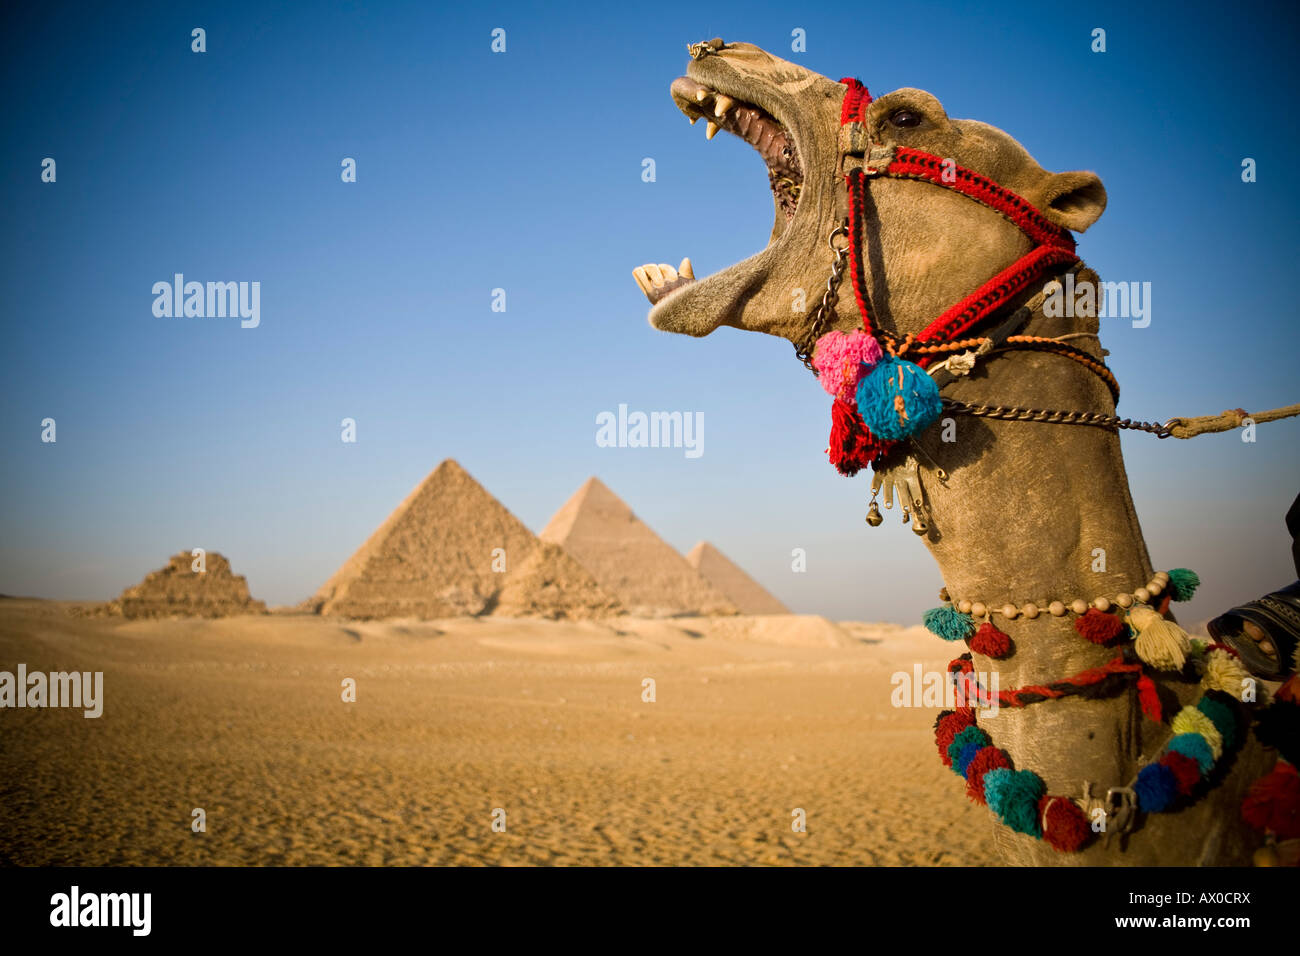 Camel at the Pyramids, Giza, Cairo, Egypt Stock Photo